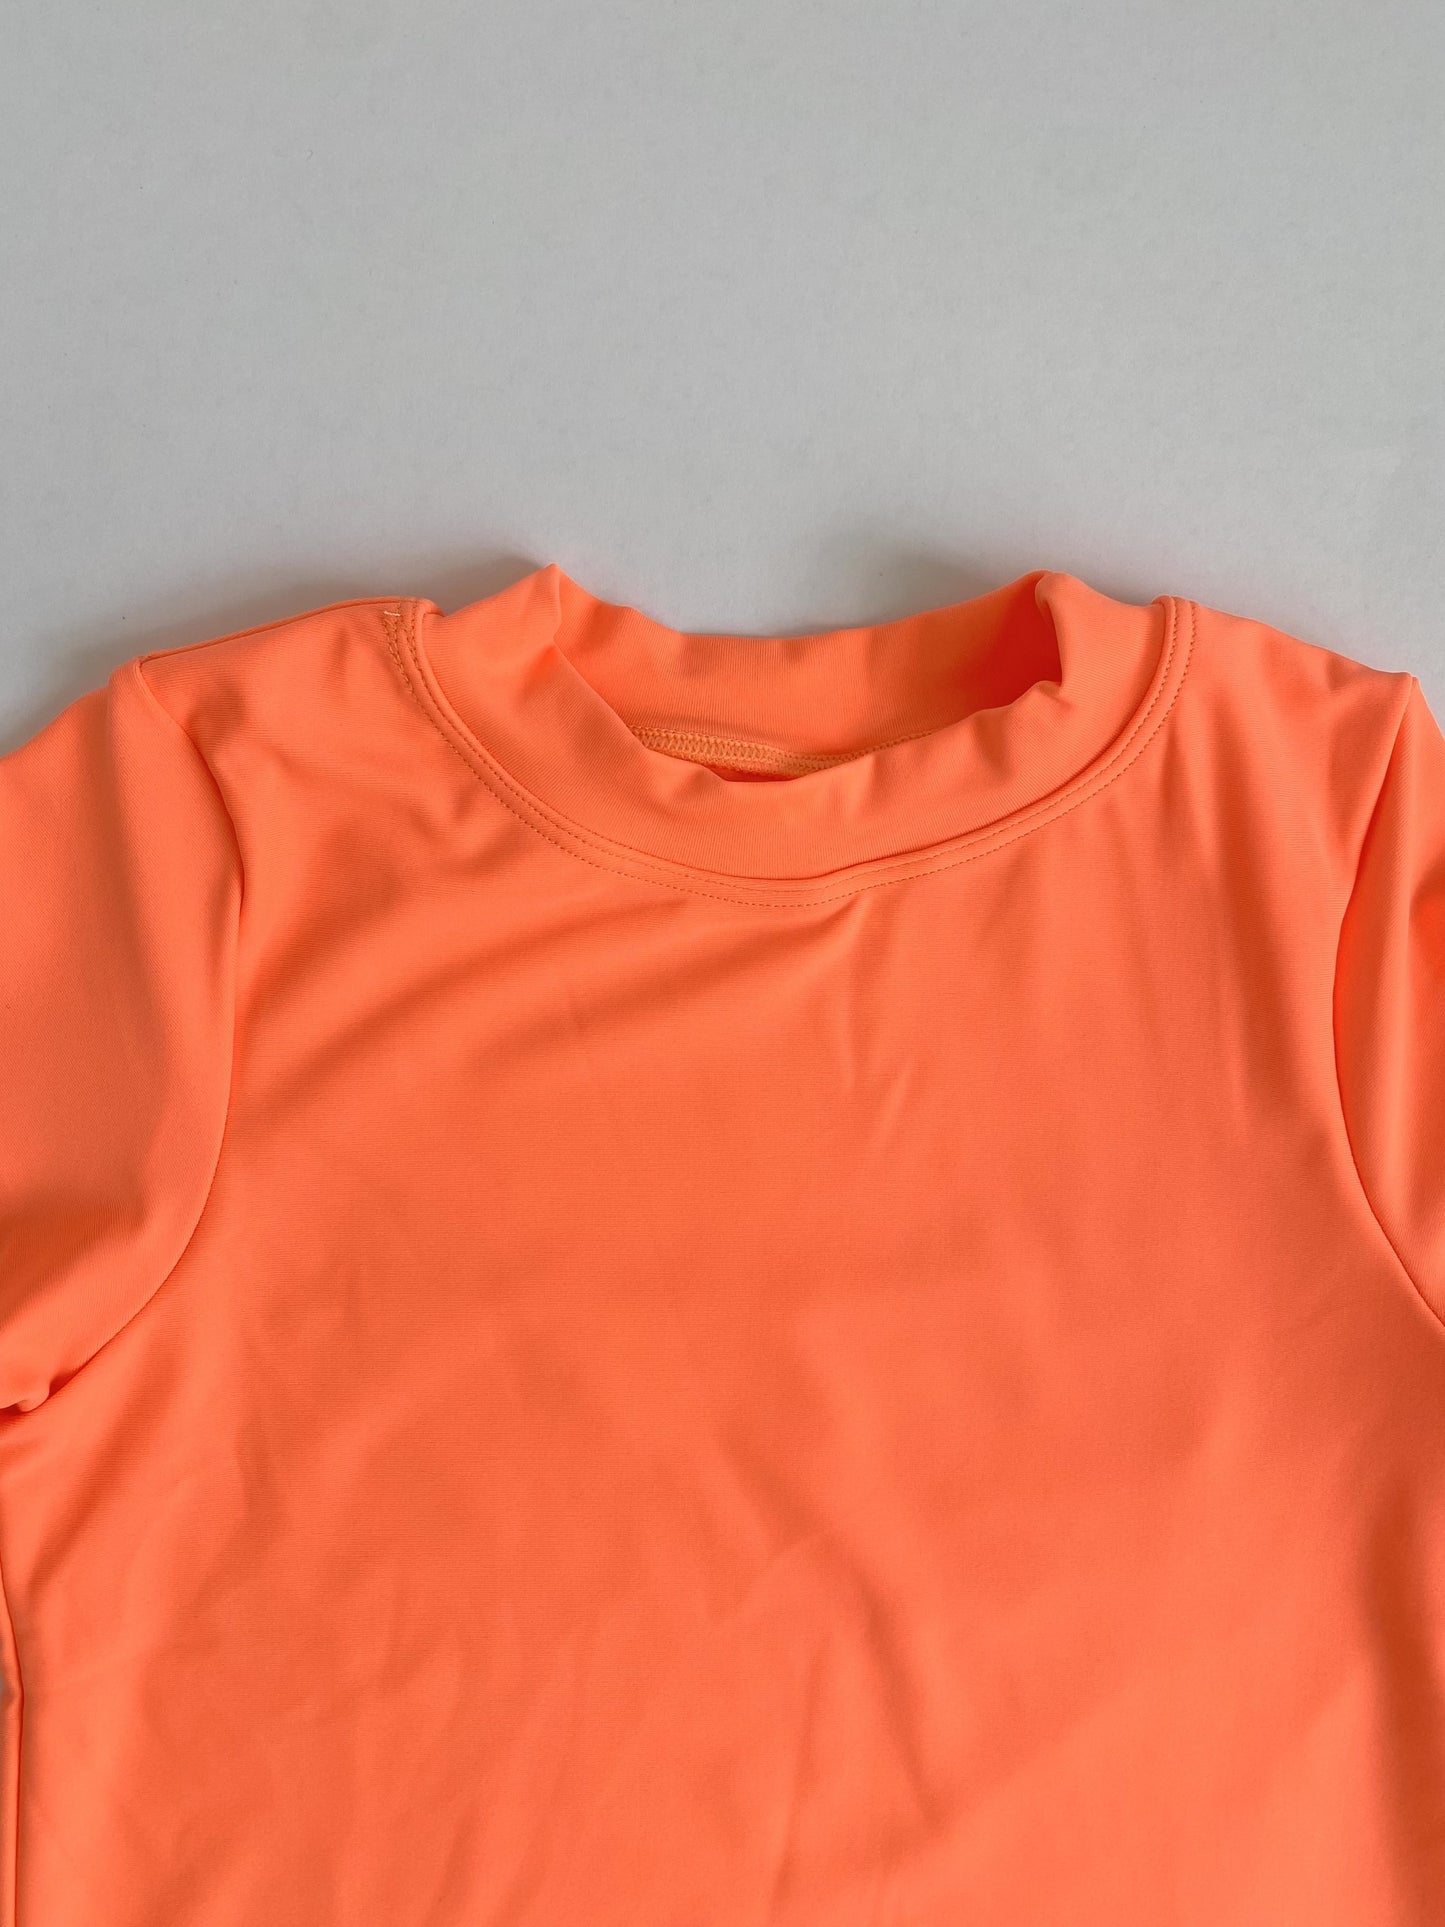 Nomad Boy Short Set In Neon Orange